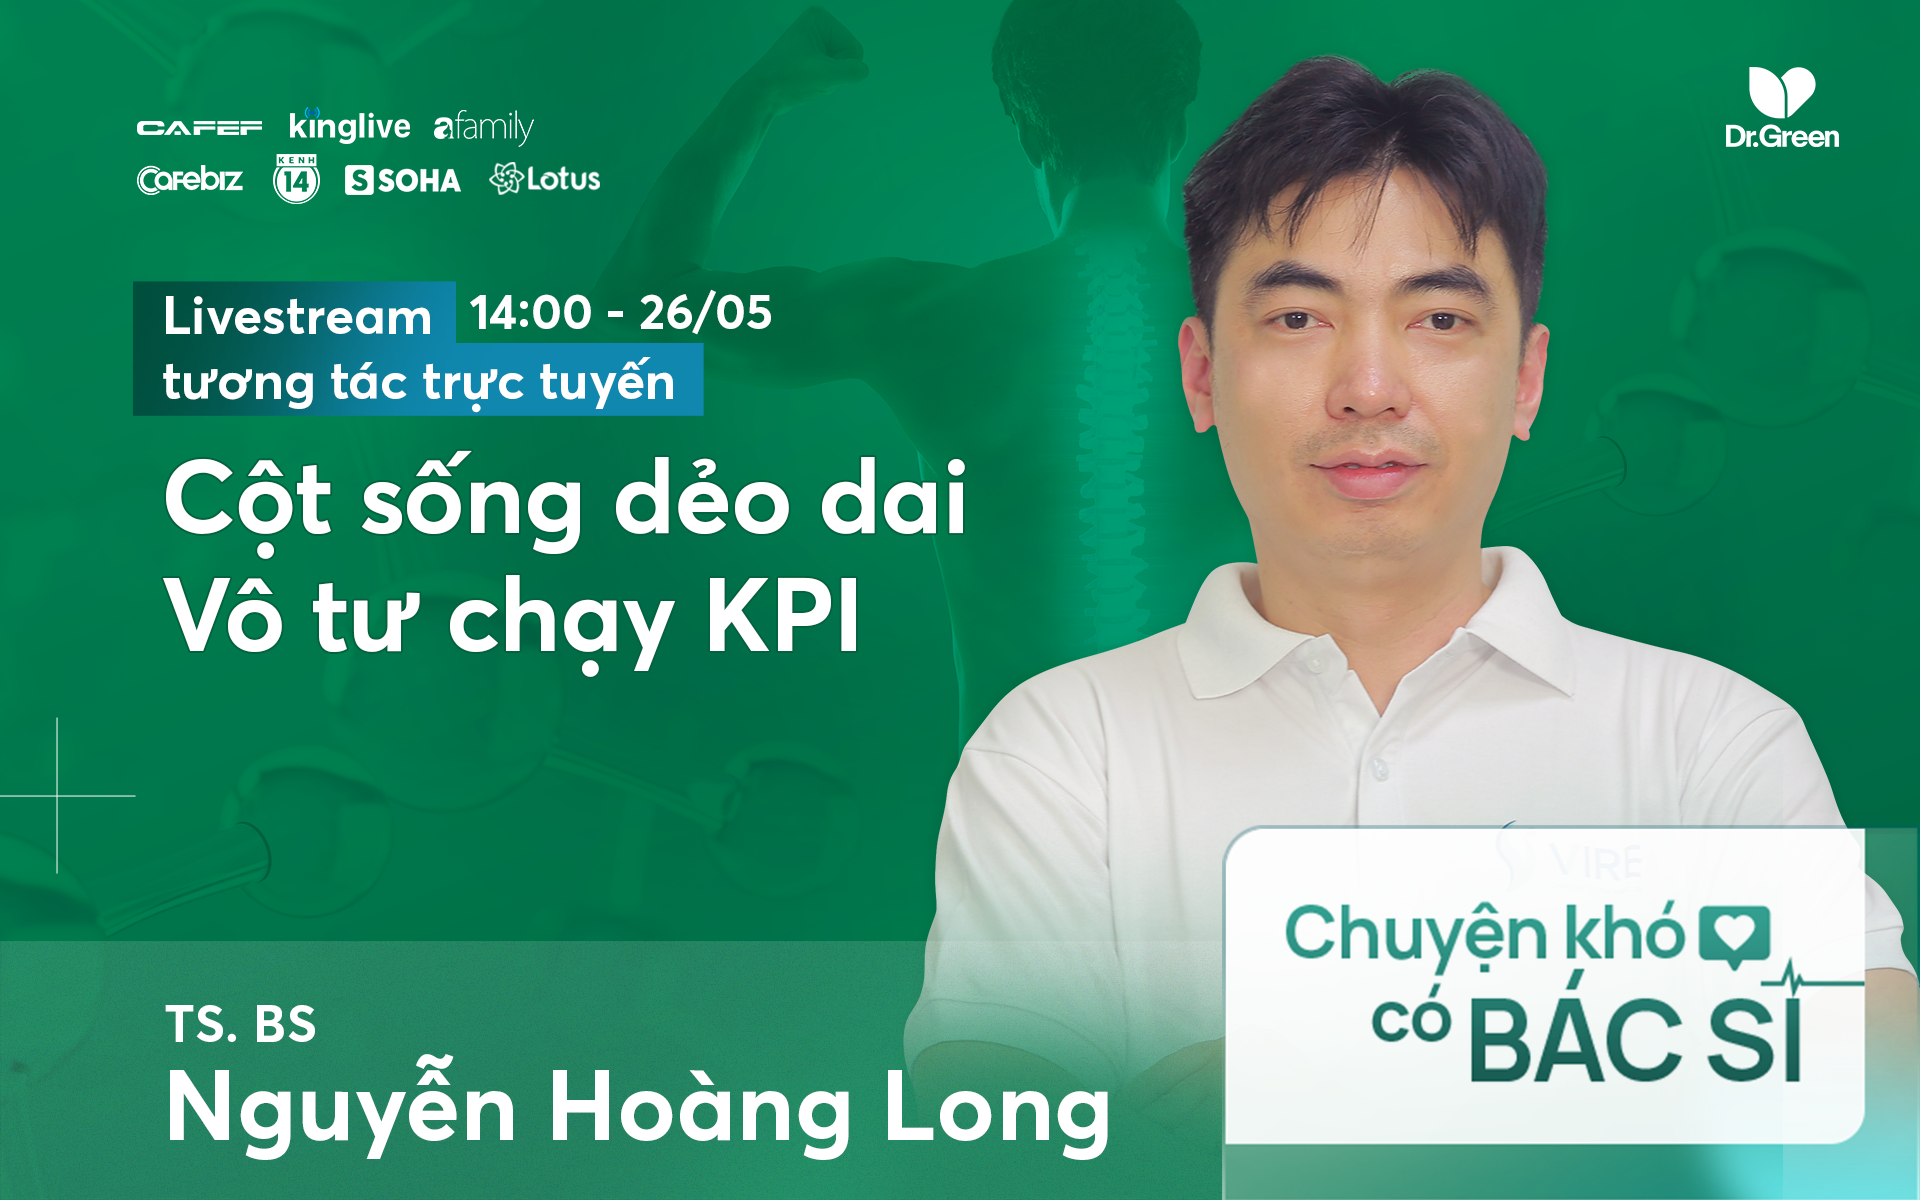 TS. BS Nguyễn Hoàng Long tư vấn bí quyết để &quot;Cột sống dẻo dai, vô tư chạy KPI&quot;